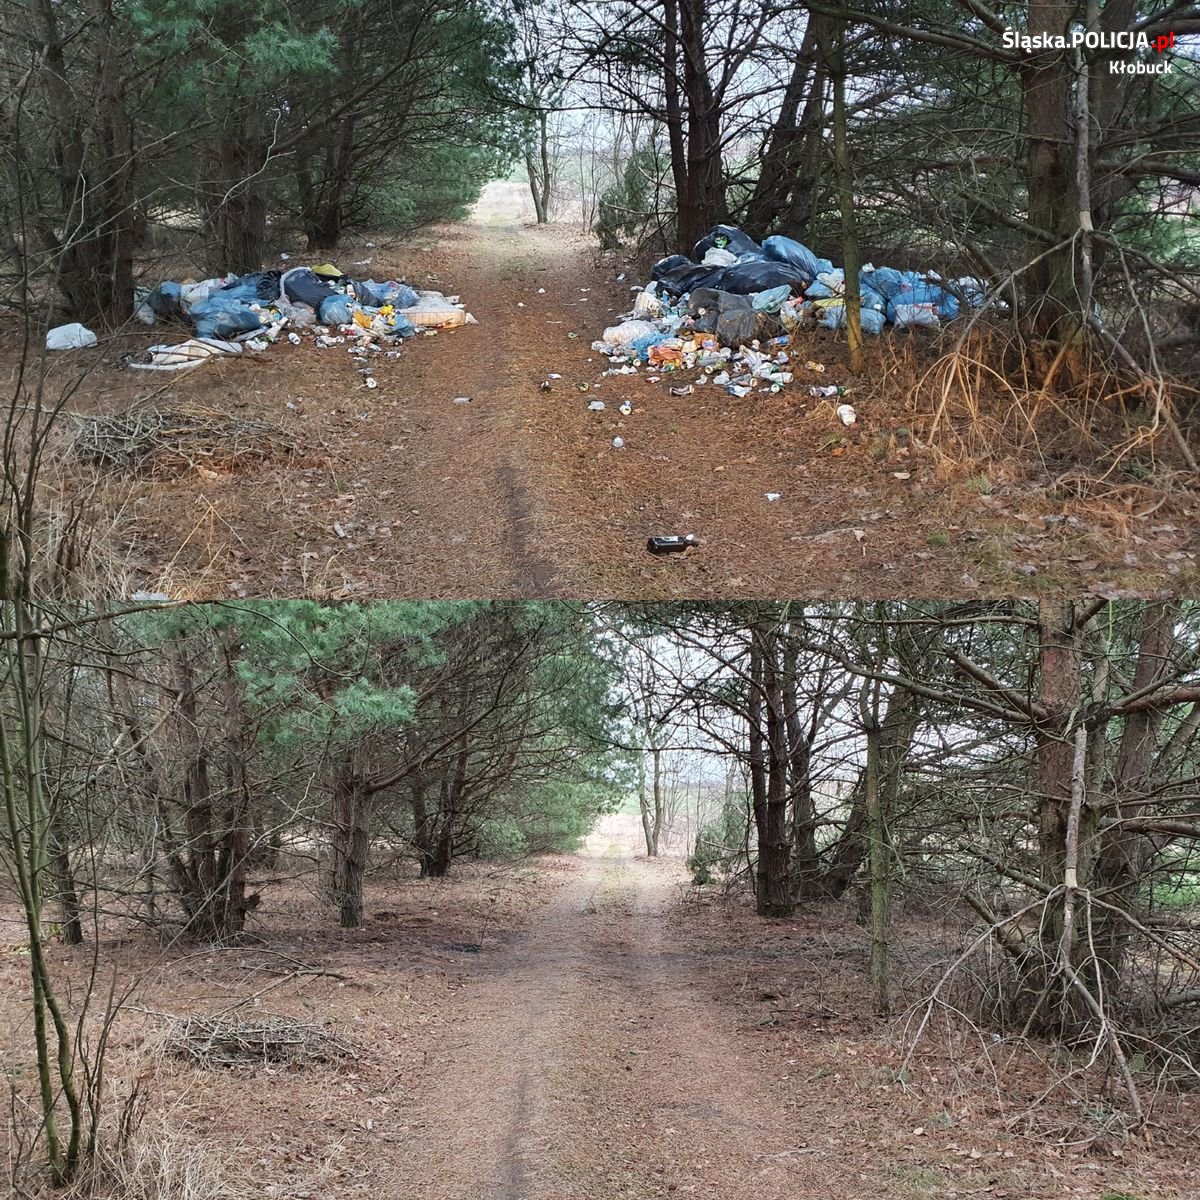 dwa zdjęcia połączone ze sobą, na górze widać śmieci porzucone przy drodze leśnej, na dole drogę leśną bez śmieci